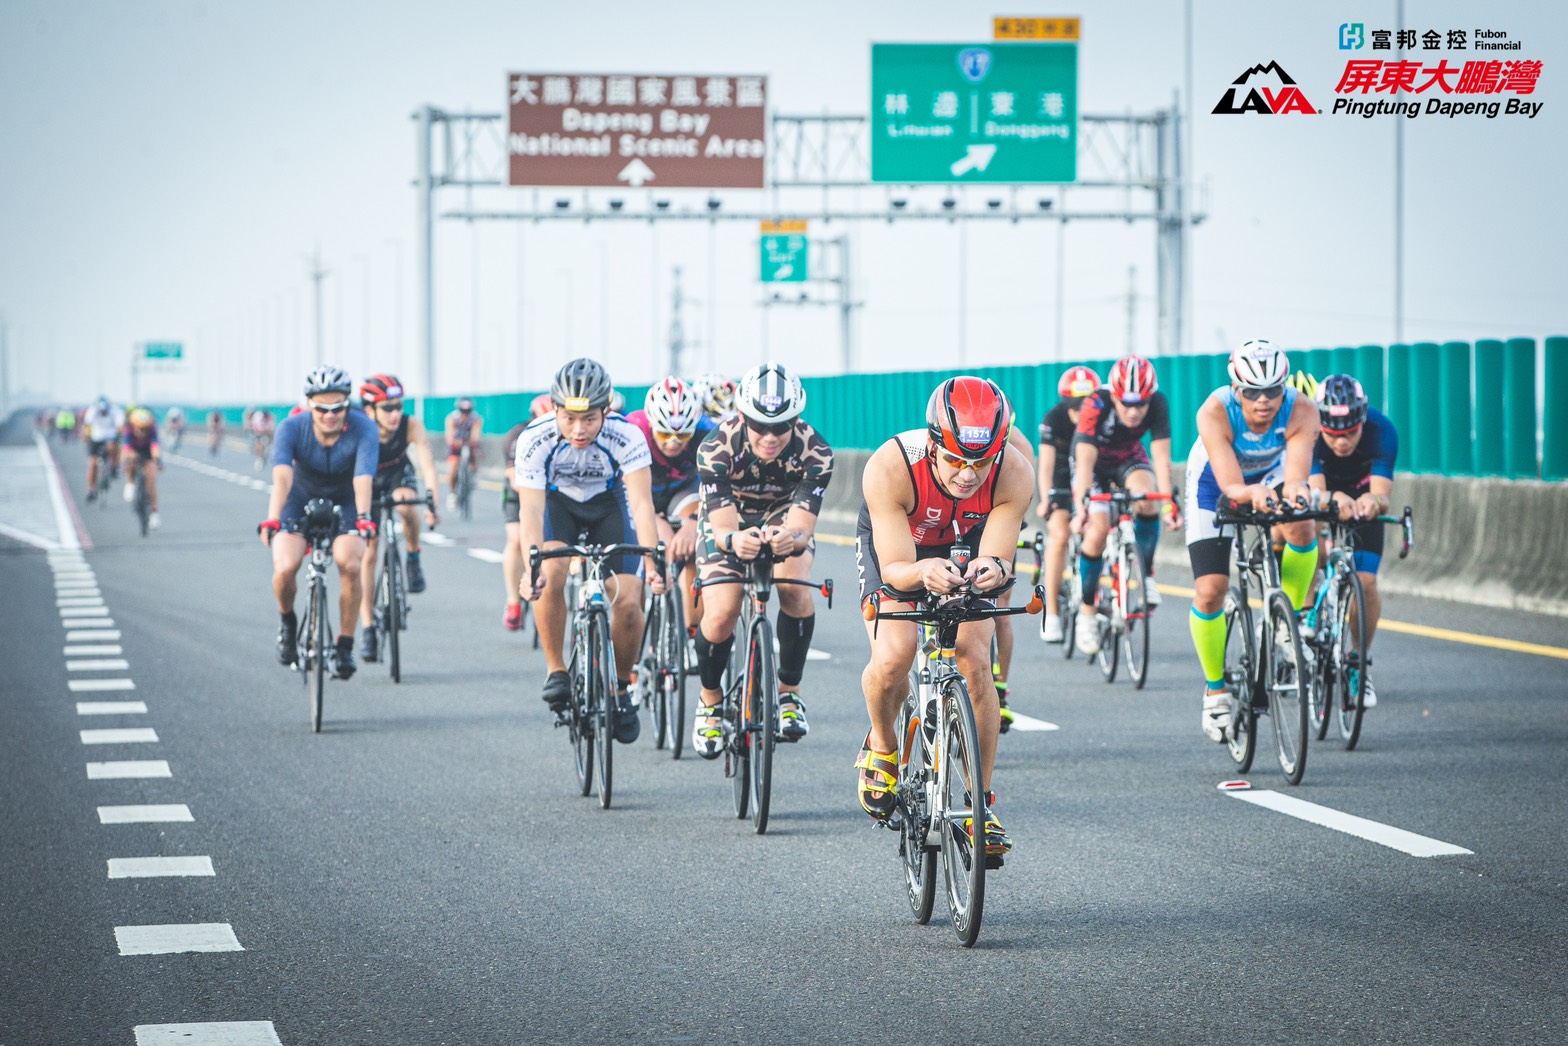 Die Fahrräder der "2020 Fubon Financial Holding LAVA TRI Triathlon Dapeng Bay Station" schließen den Abschnitt der Nationalstraße Nanzhou Dapeng Bay und die Ringstraßen, sodass die Fahrer den Spaß am Speed Riding genießen können